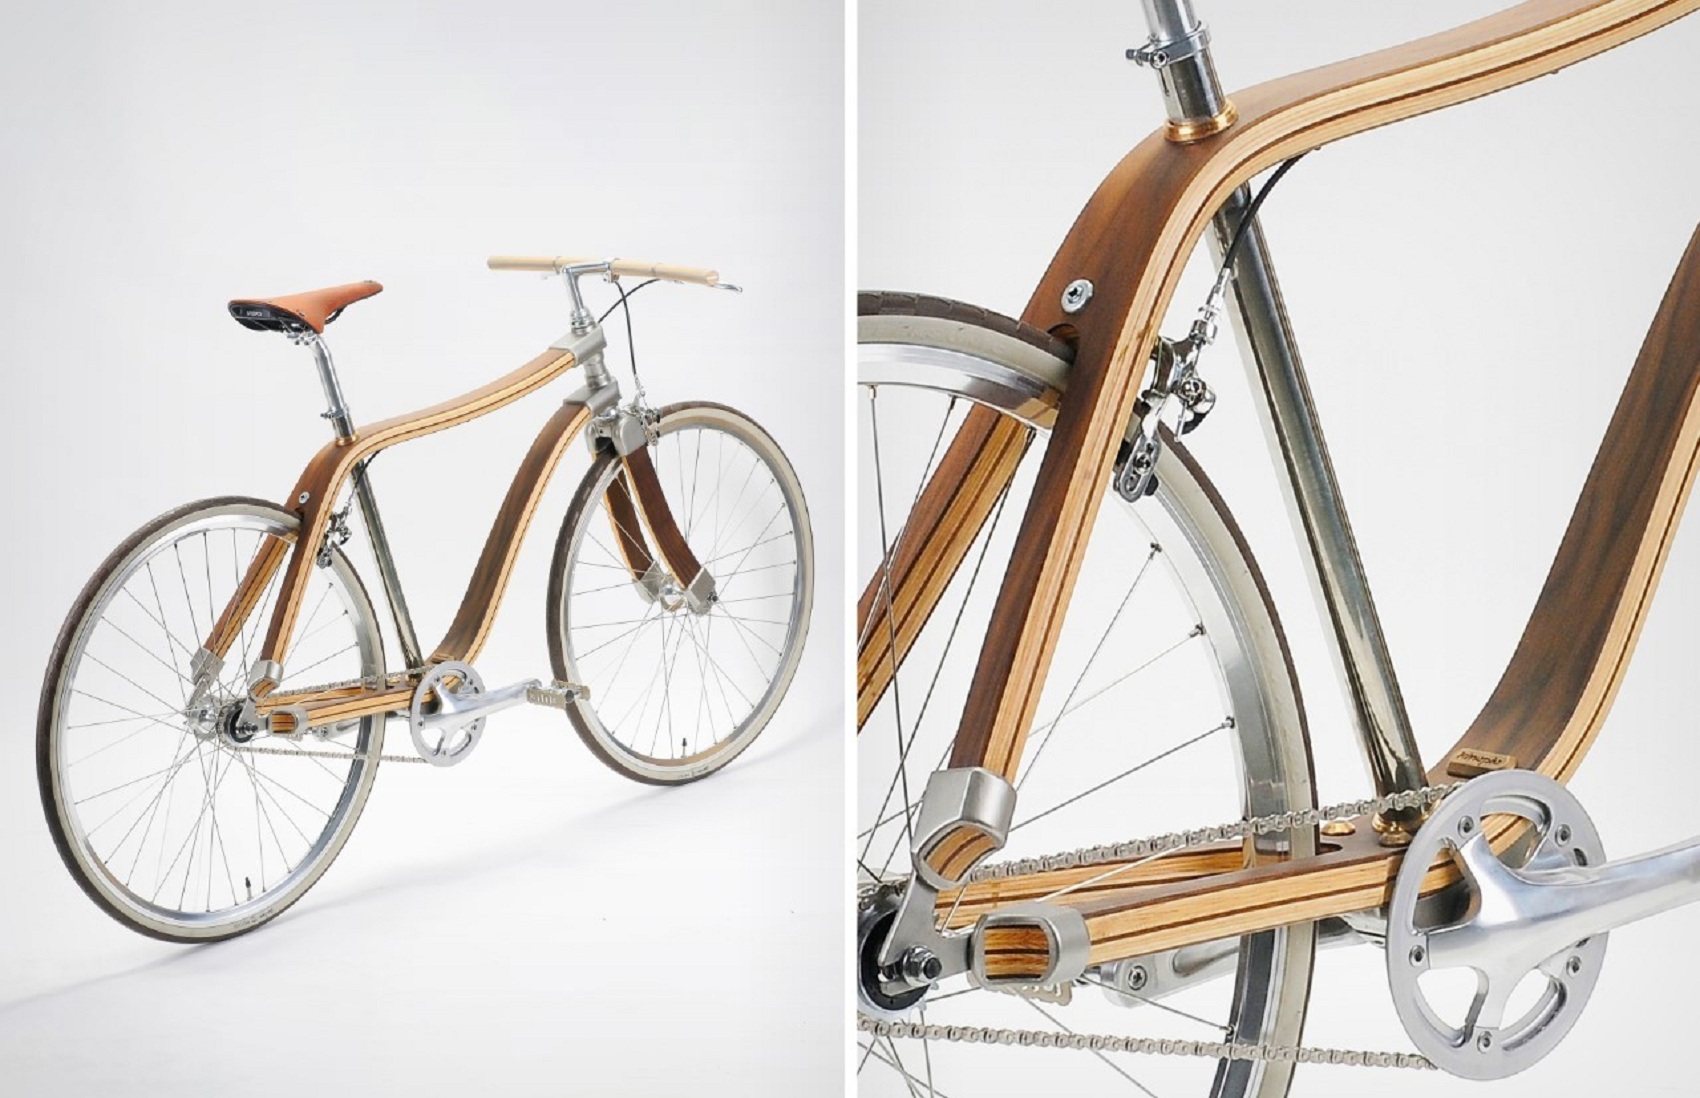 Moccle - Chiếc xe đạp khung gỗ không cần giảm xóc